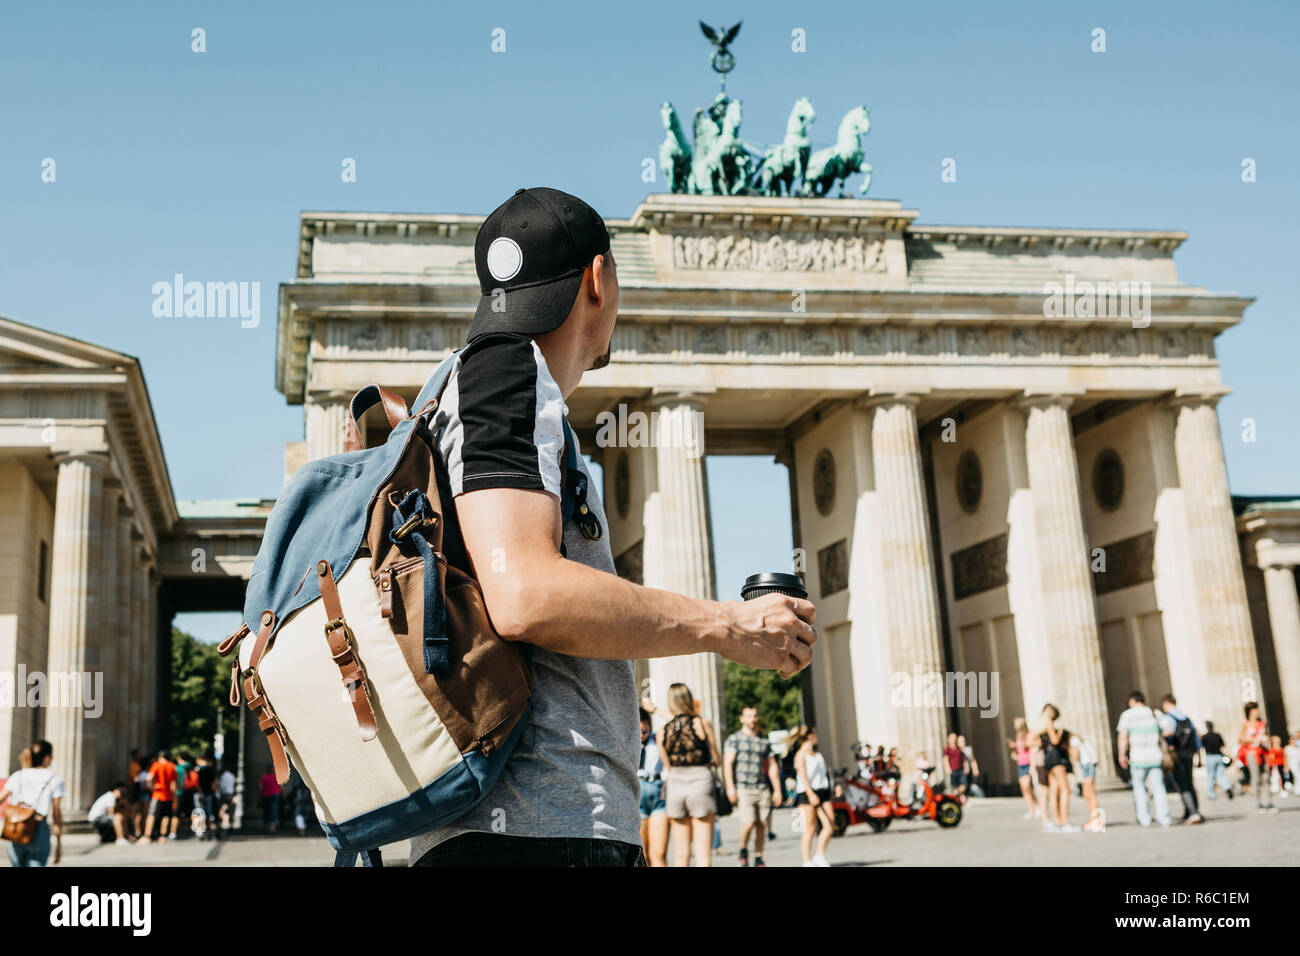 Eine Person hält eine Tasse mit Kaffee oder einem anderen Getränk beim Gehen oder Sightseeing in Berlin, Deutschland. Vor dem Brandenburger Tor und verschwommen, unbekannte Menschen. Stockfoto